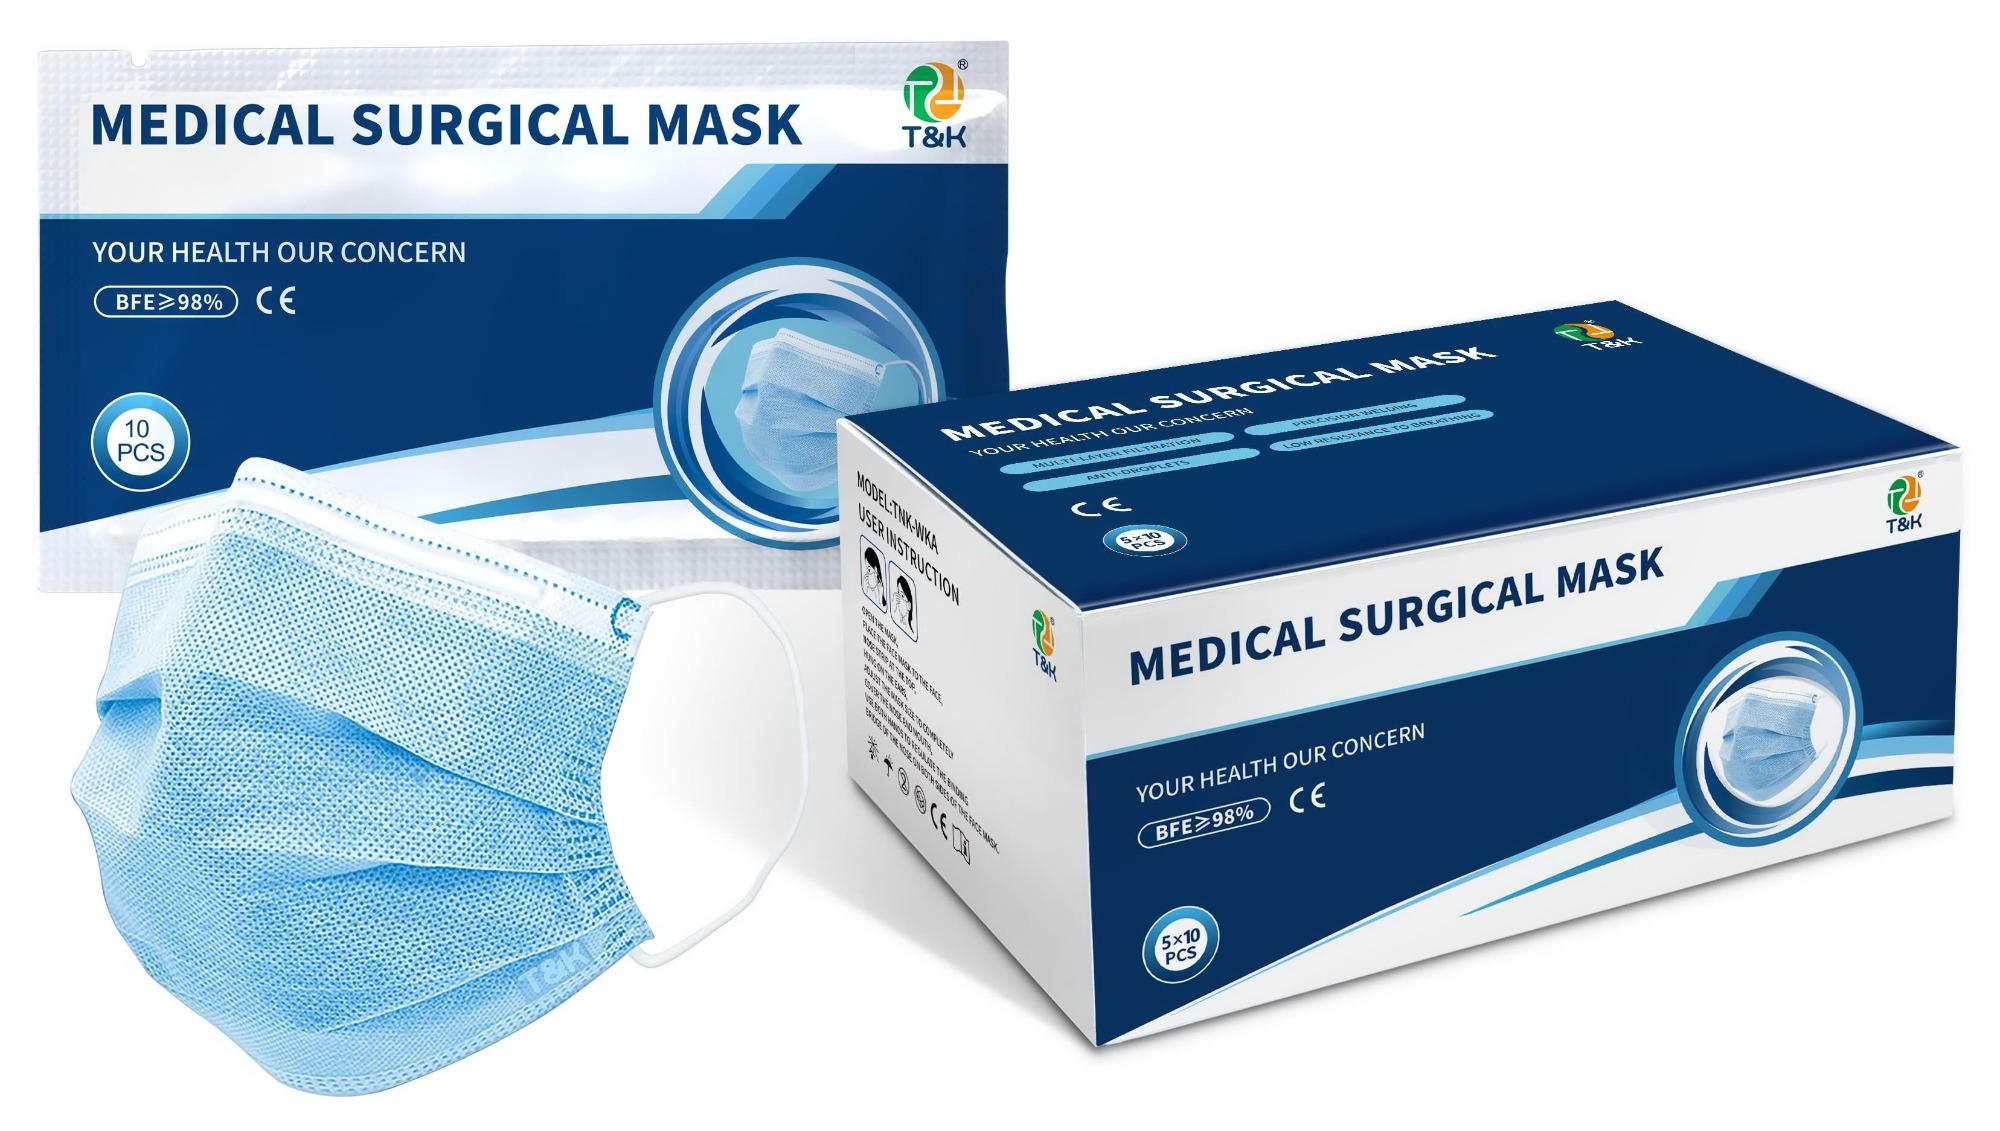 Les masques médicaux sont-ils étanches et comment savoir s'il s'agit de masques médicaux ? - célèbre entreprise de masques jetables